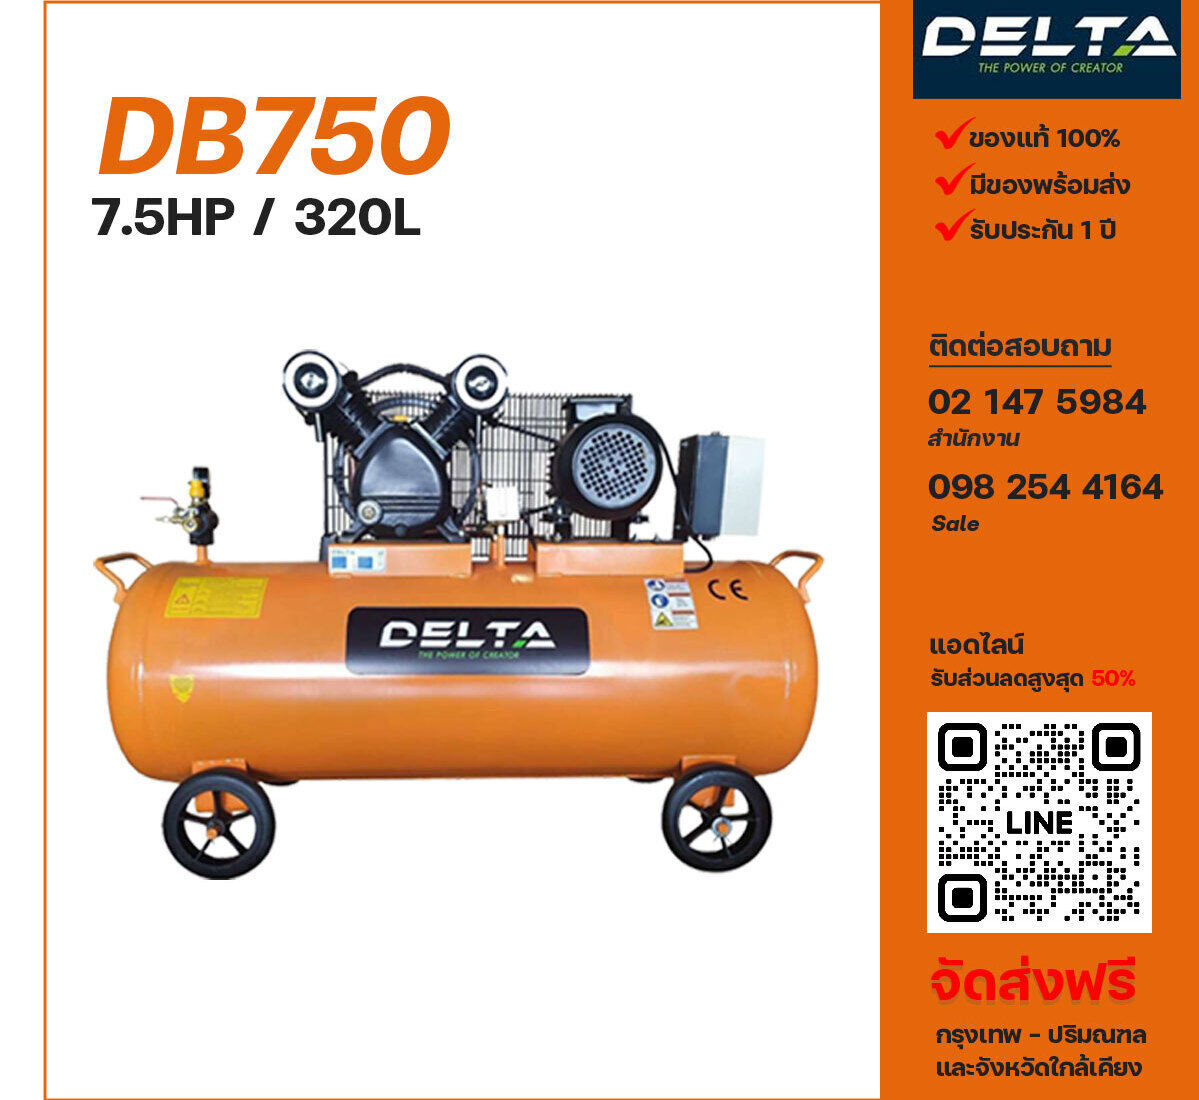 ปั๊มลมเดลต้า DELTA DB750 380V ปั๊มลมลูกสูบ ขนาด 2 สูบ 7.5 แรงม้า 320 ลิตร DELTA พร้อมมอเตอร์ ไฟ 380V ส่งฟรี กรุงเทพฯ-ปริมณฑล รับประกัน 1 ปี